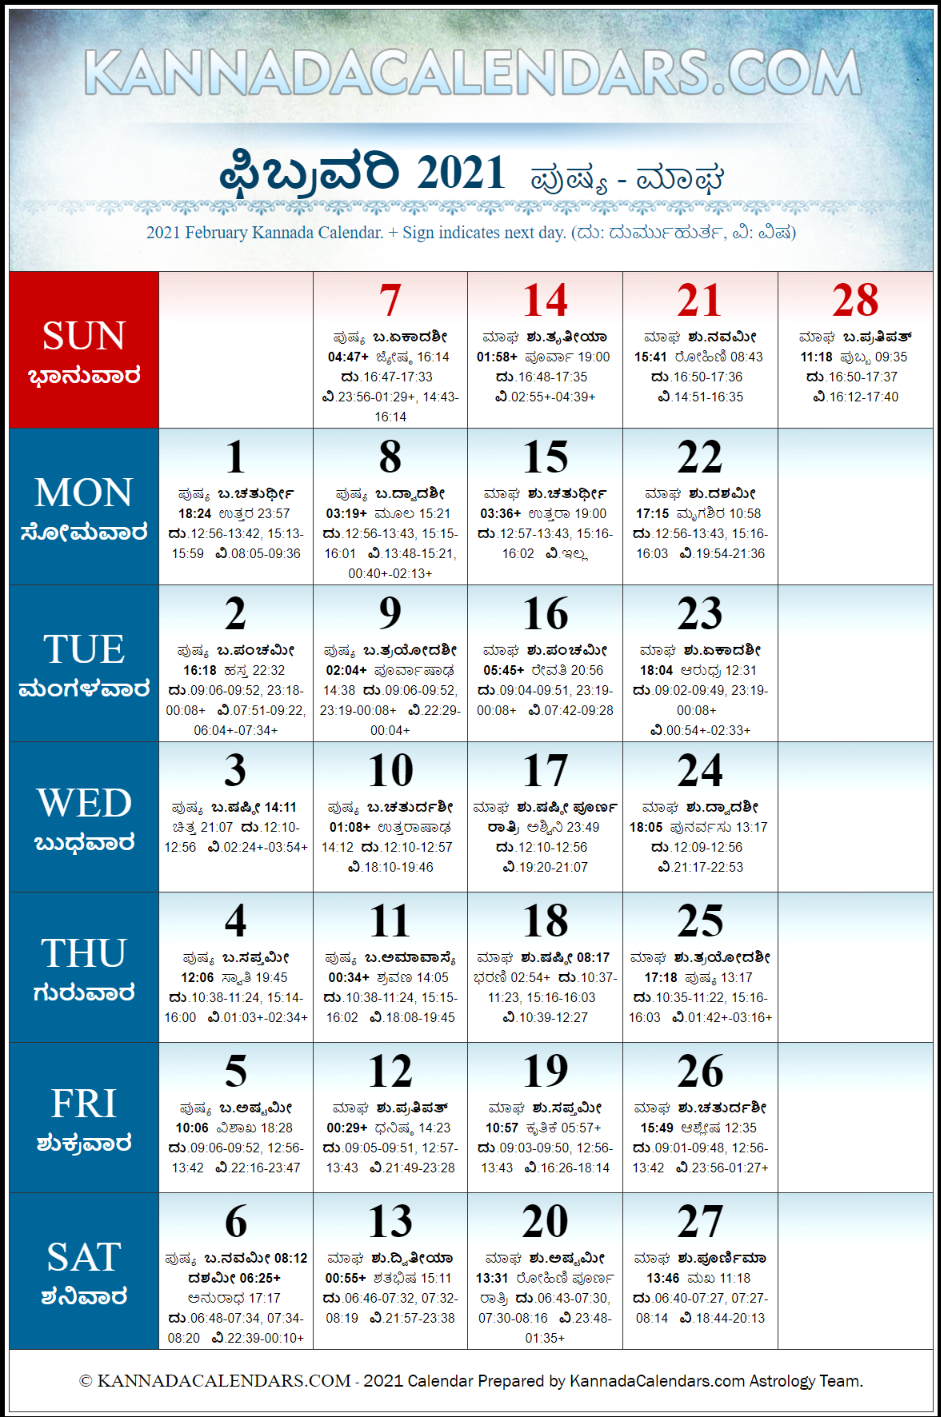 Mahalaxmi Calendar 2021 Kannada February - Just Call Me